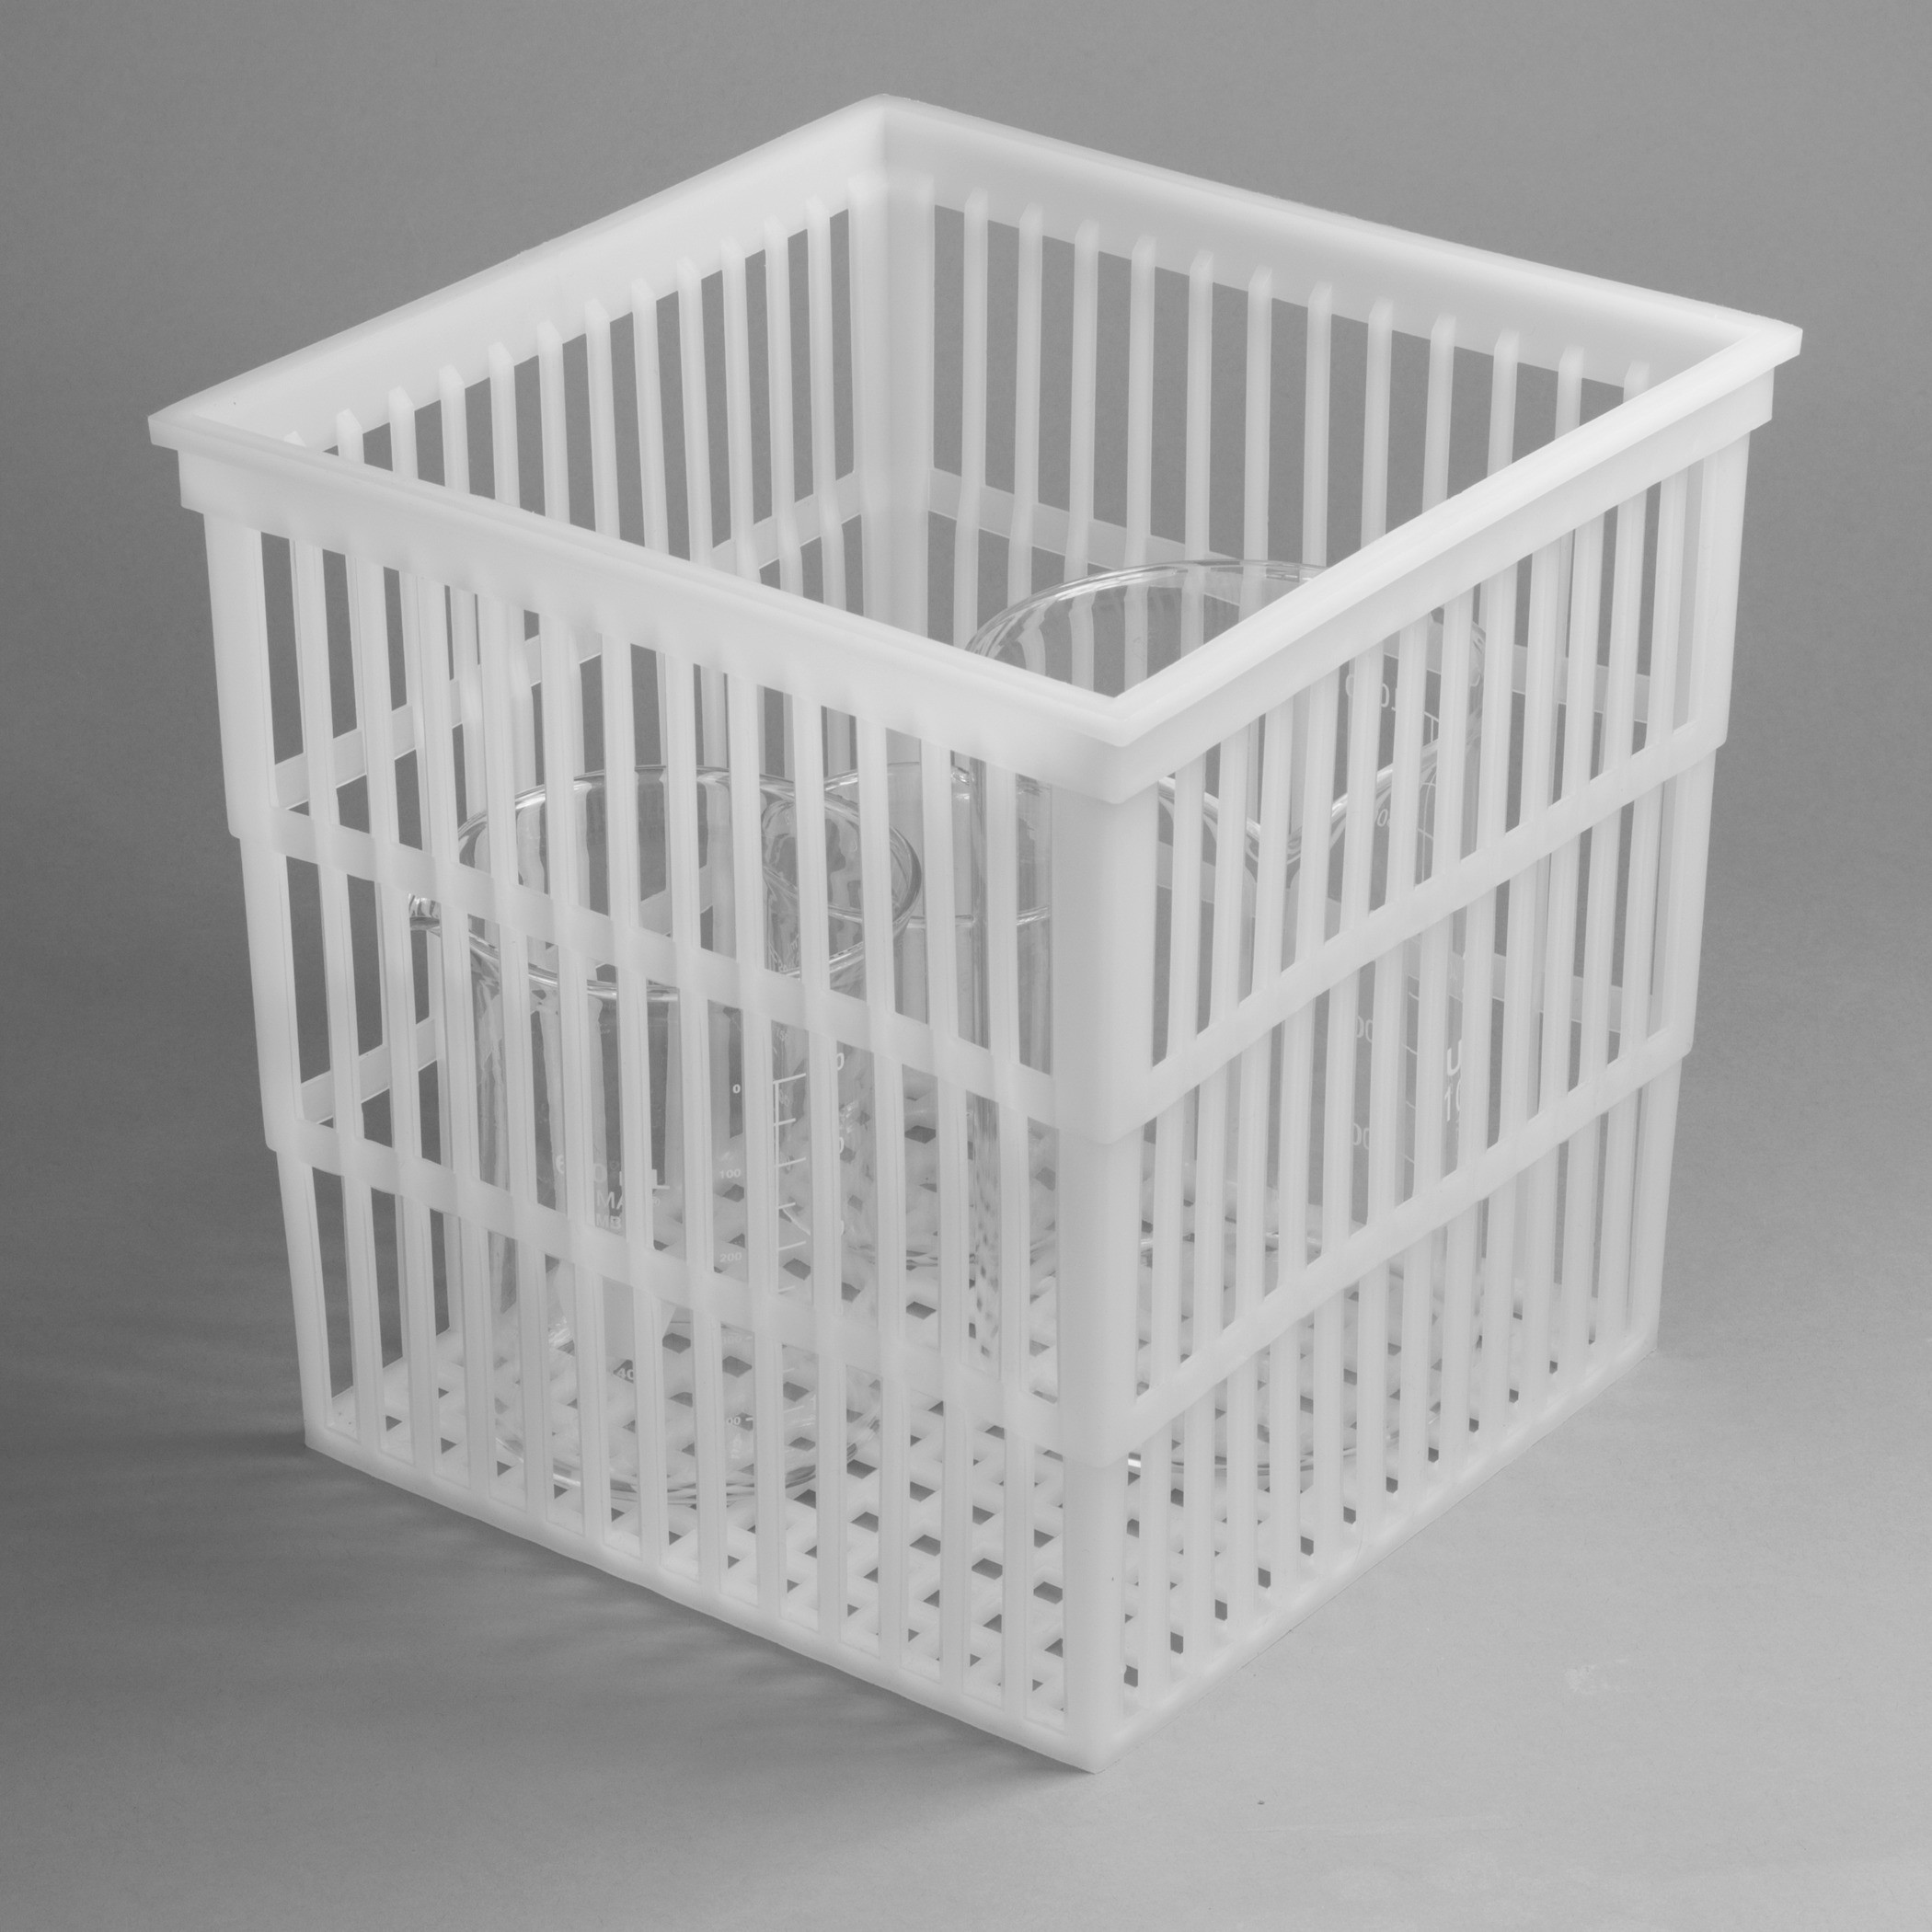 SP Bel-Art Polypropylene Test Tube Basket; 9 x 9 x 9 in., No Lid